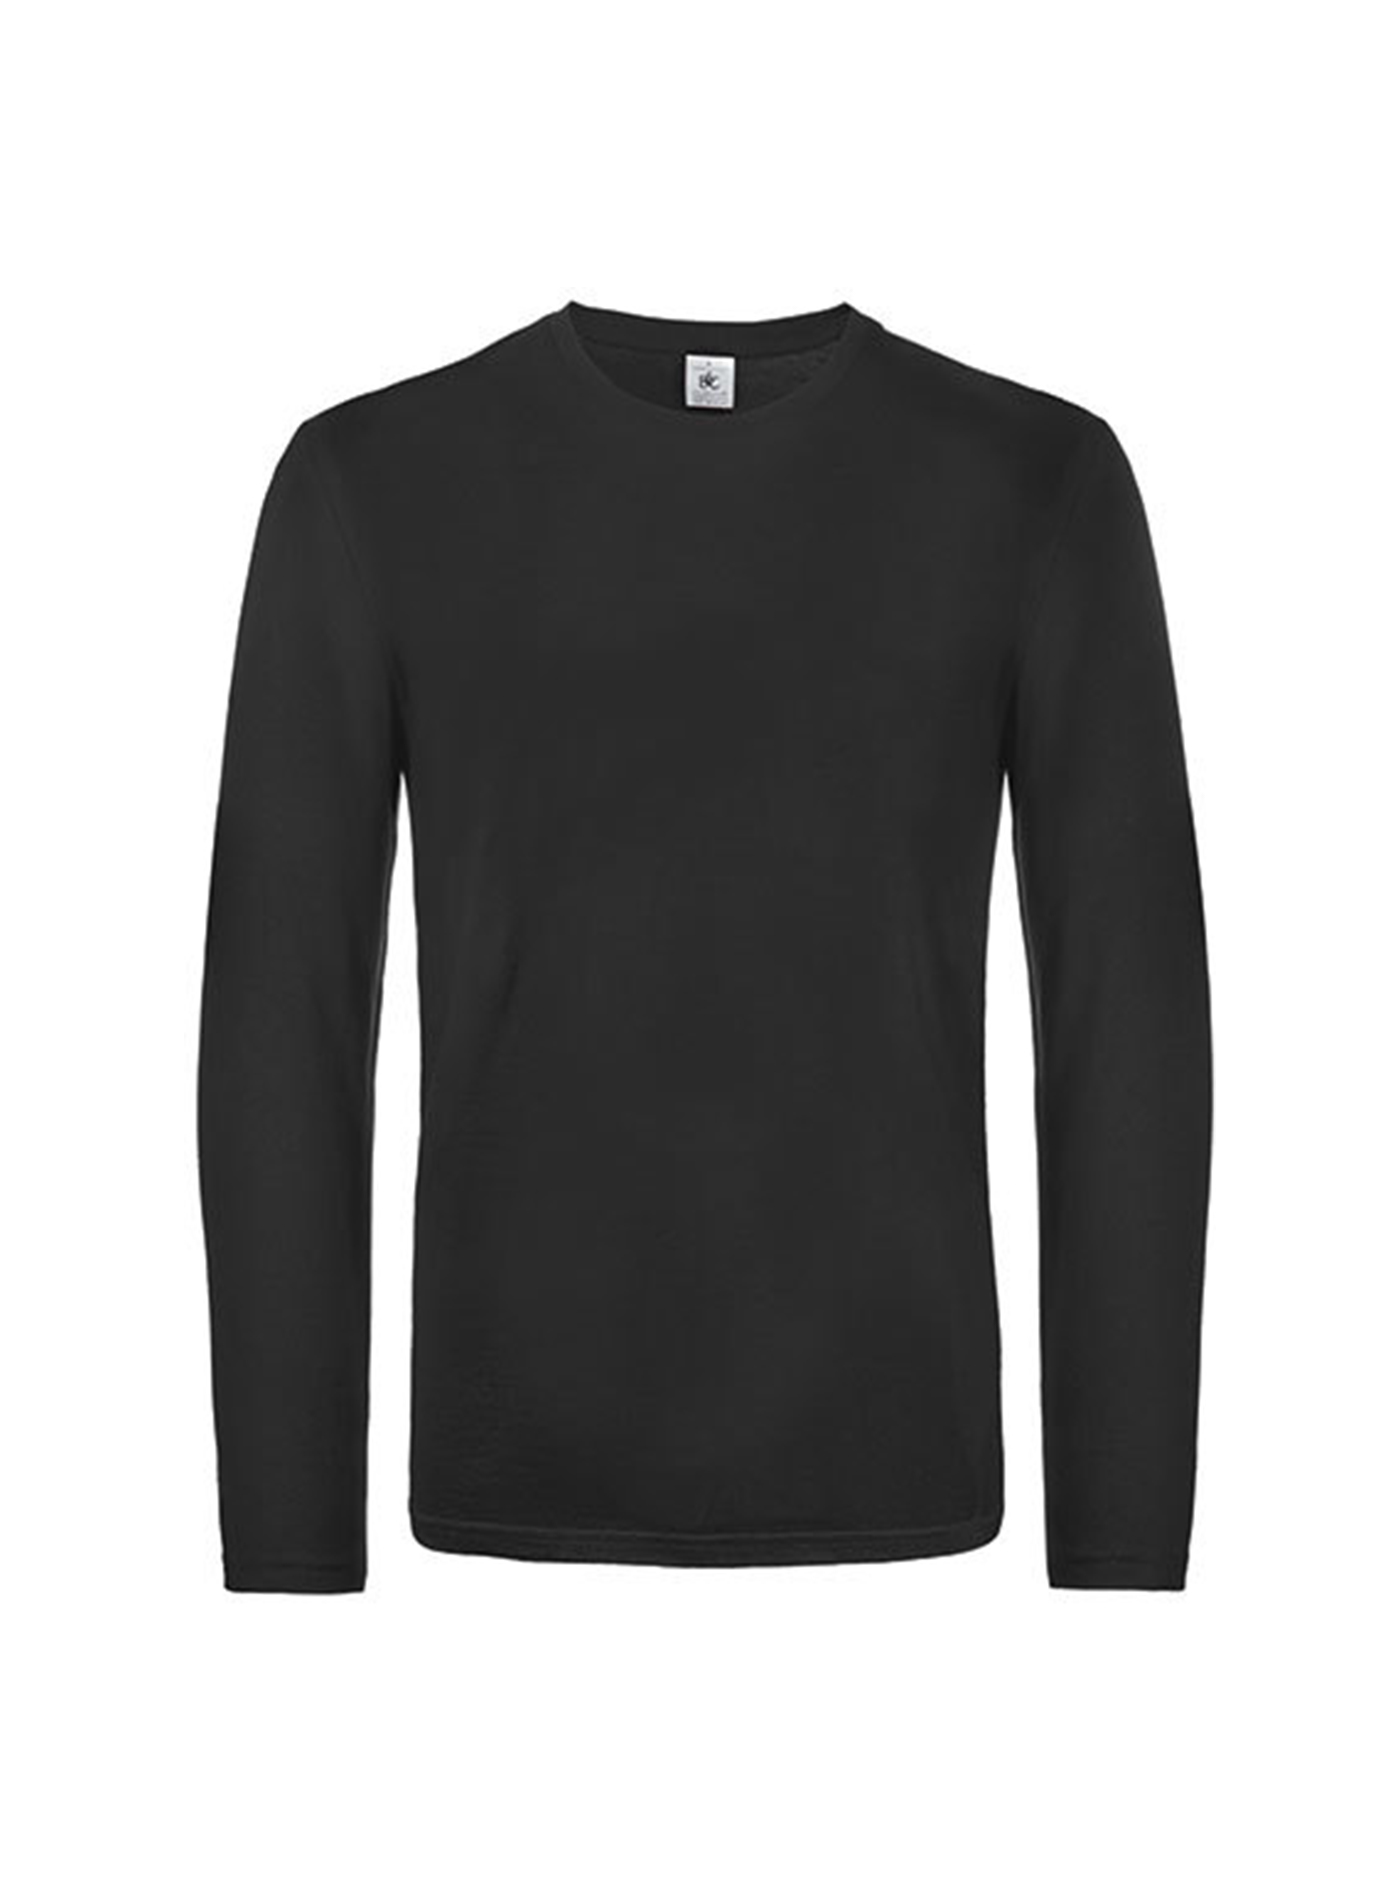 Pánské tričko s dlouhým rukávem B&C Collection - Černá XXL